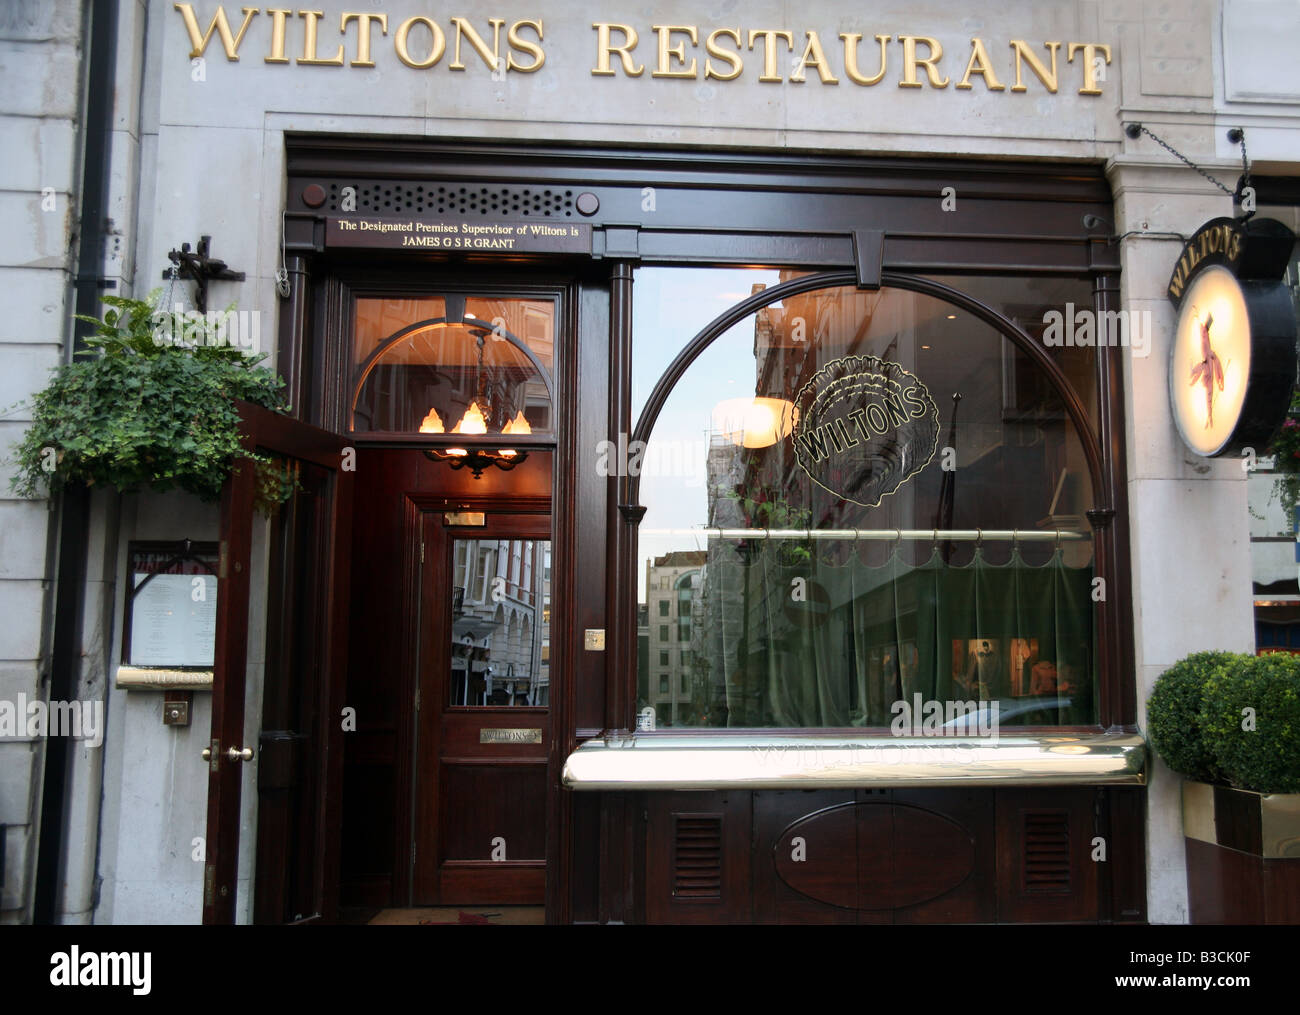 Wiltons Restaurant in Jermyn Street, London Stock Photo